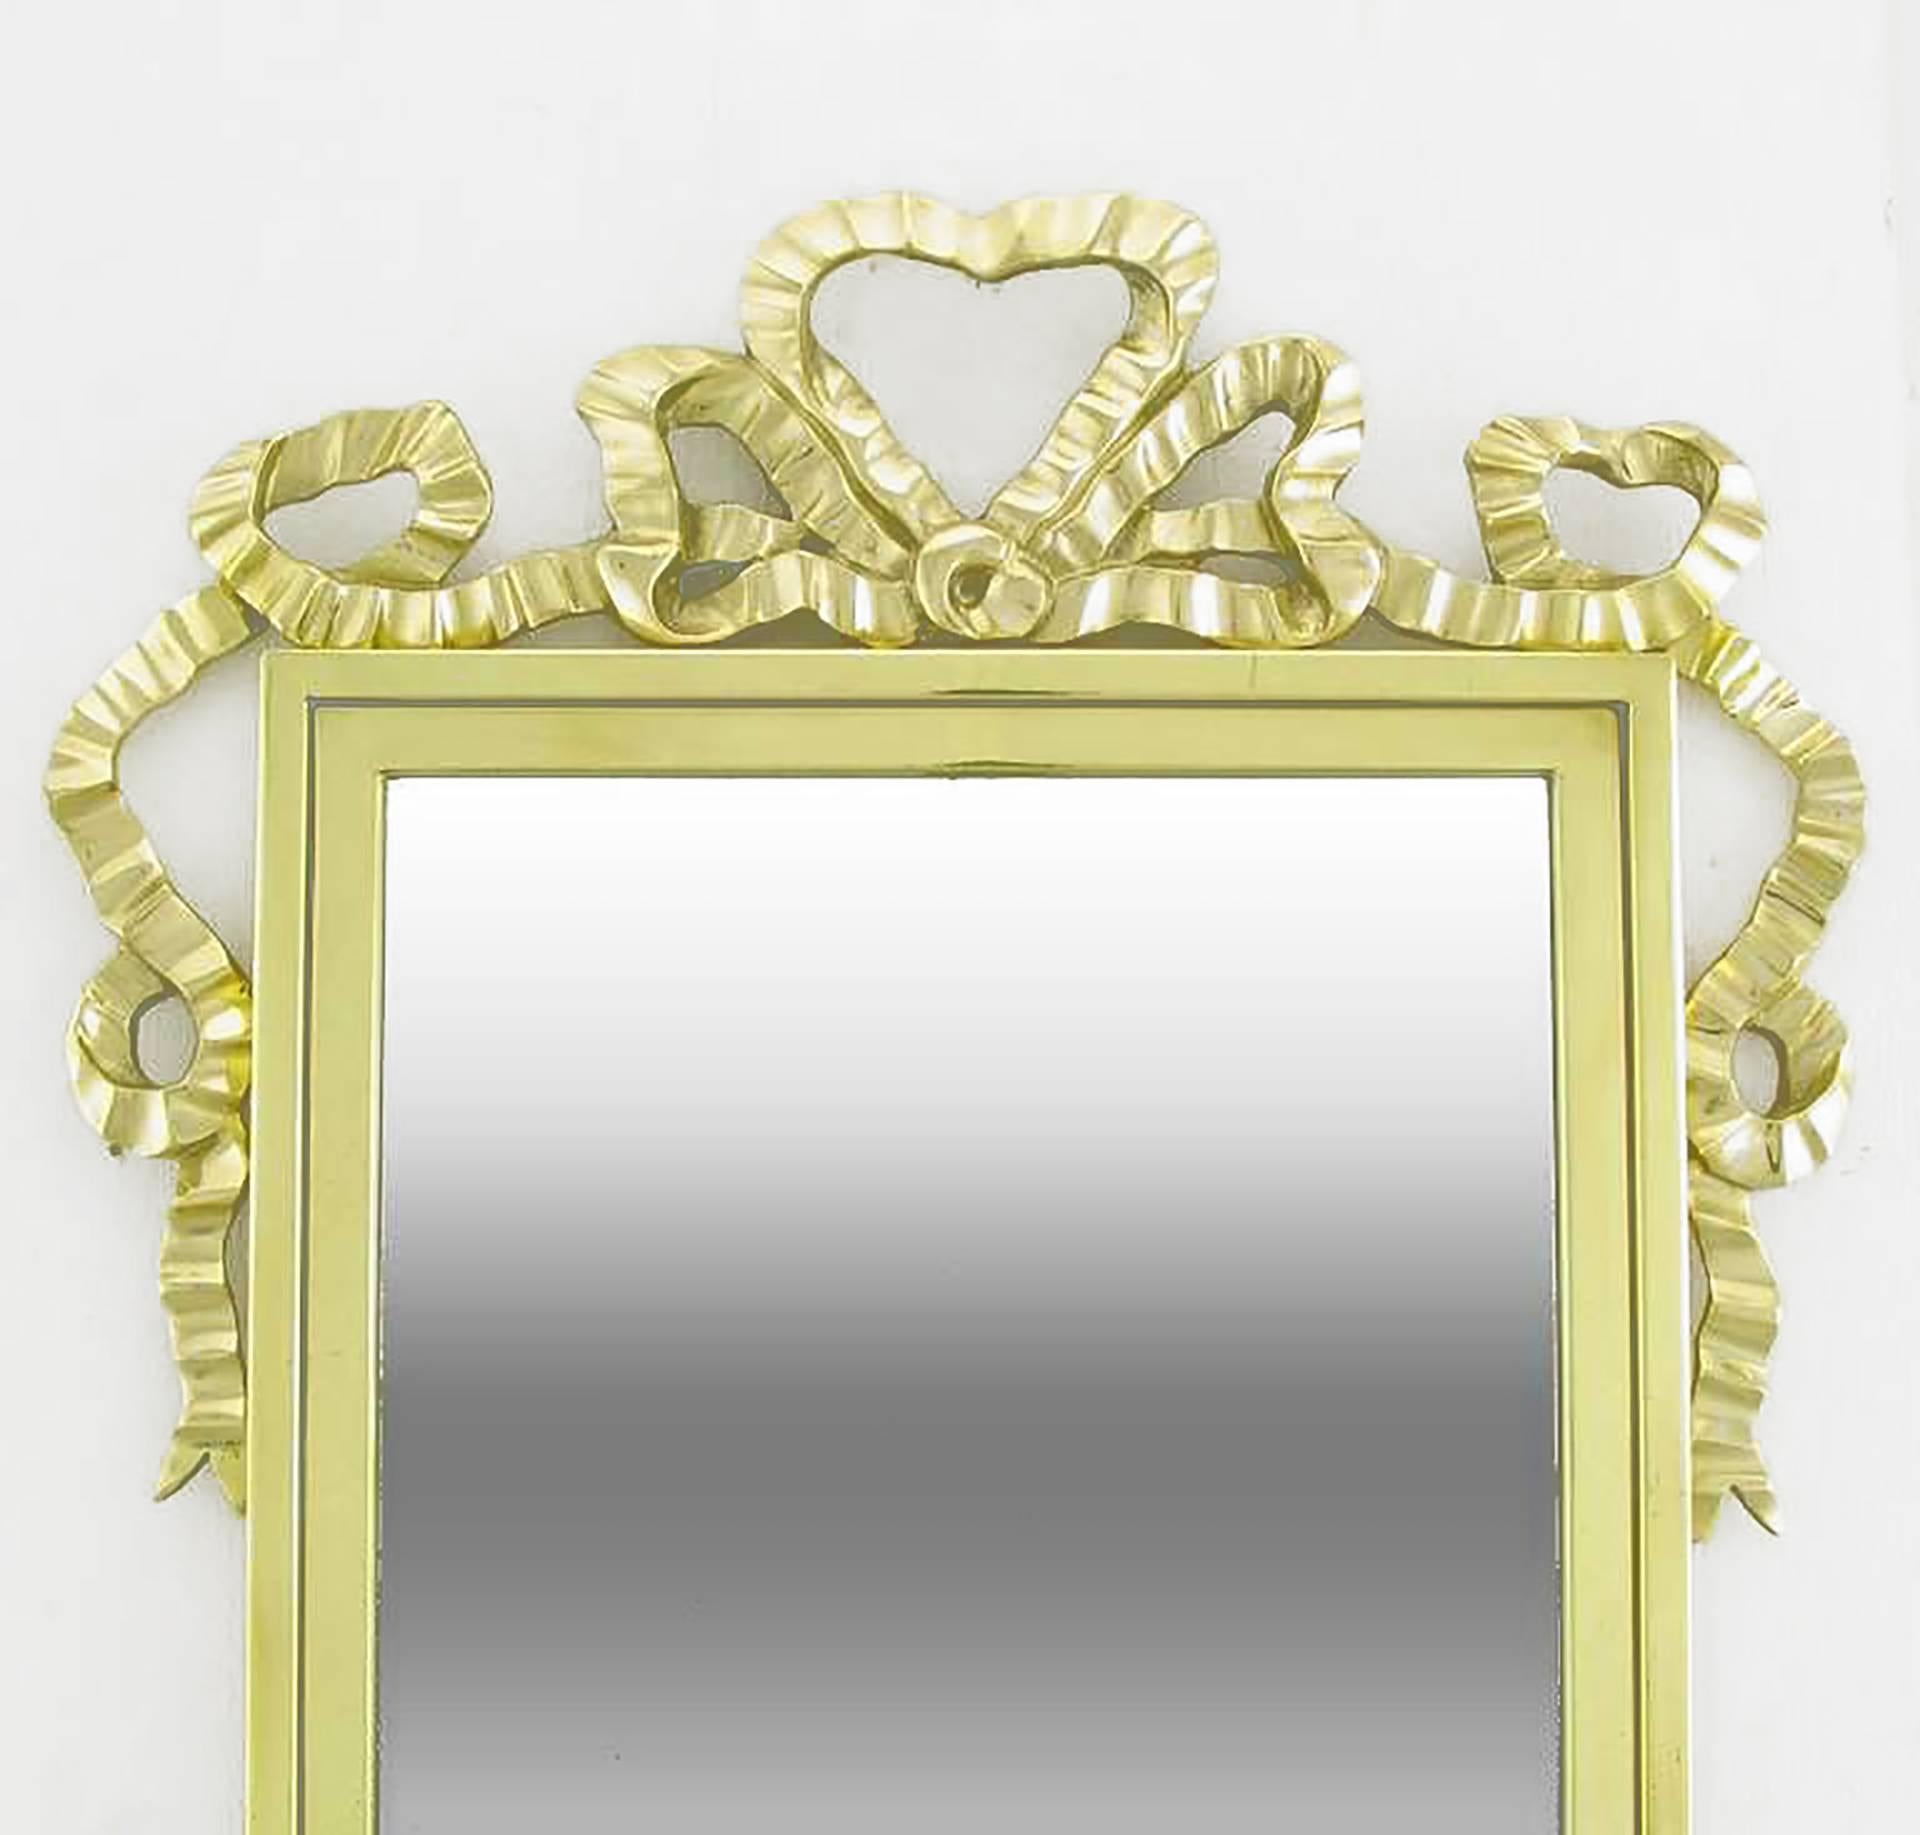 Eleganter Spiegel aus massivem Messing, umrahmt mit Bandfaltenbändern. Italienischer Import, vertrieben durch Decorative Crafts Inc. ein seit über 80 Jahren in Familienbesitz befindliches Unternehmen, das ausschließlich Möbel und feine